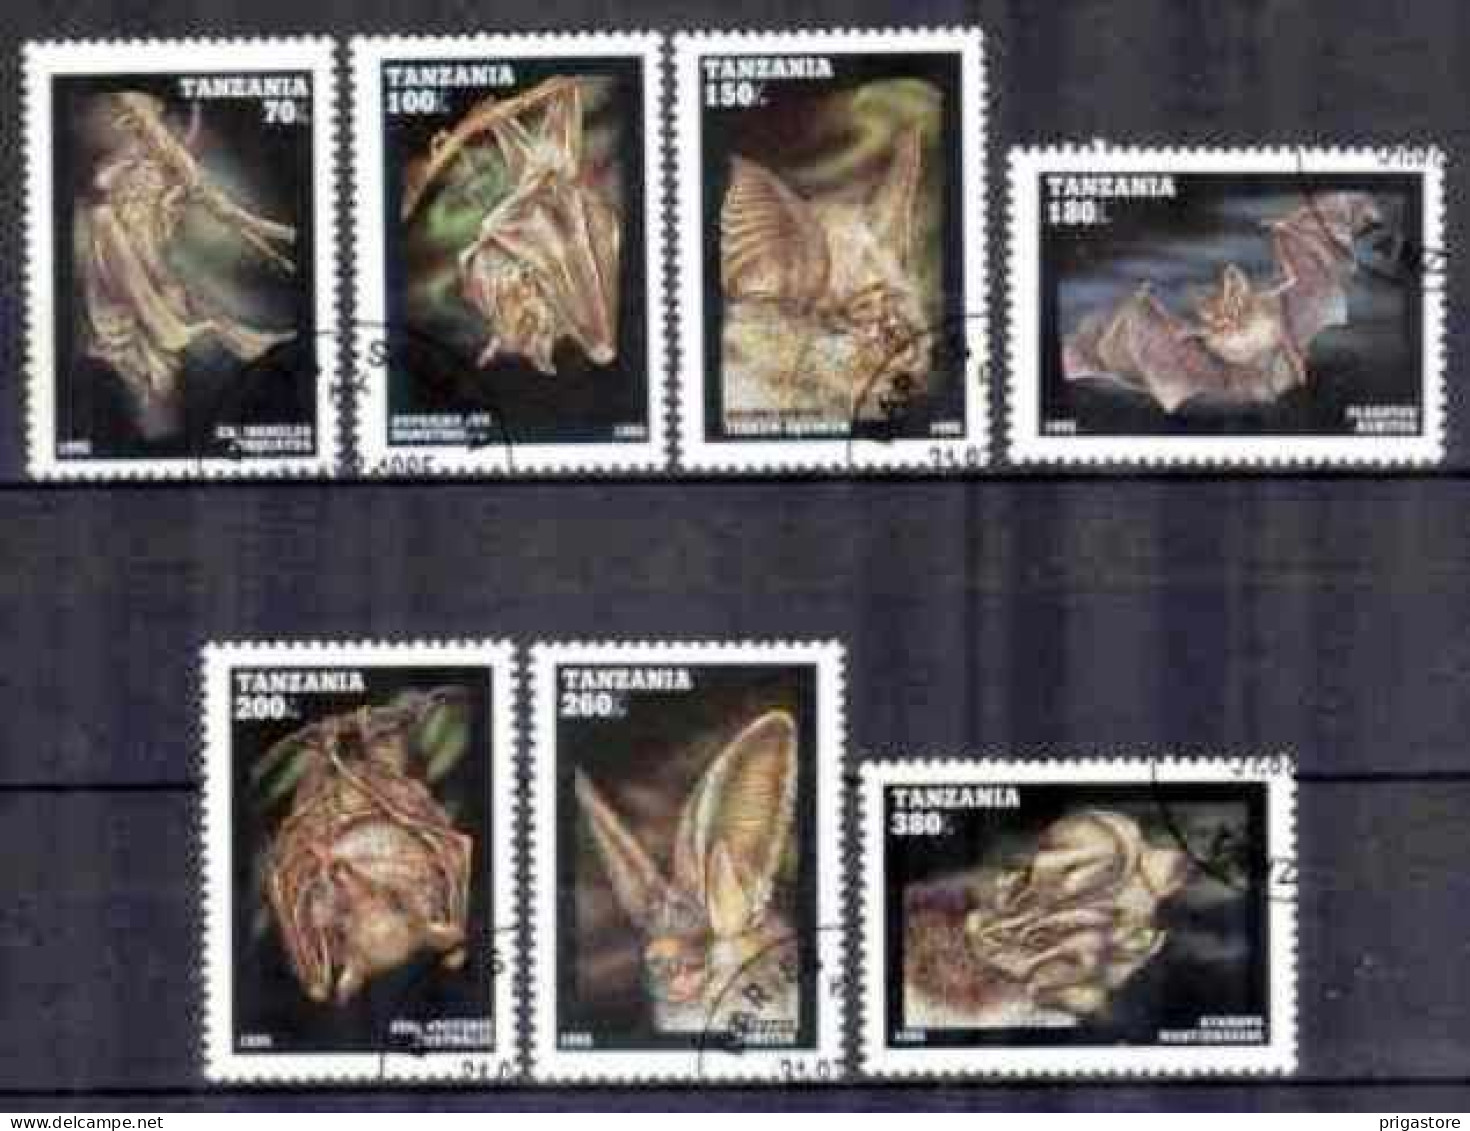 Animaux Chauve-Souris Tanzanie 1995 (17) Yvert N° 1845 à 1851 Oblitéré Used - Bats